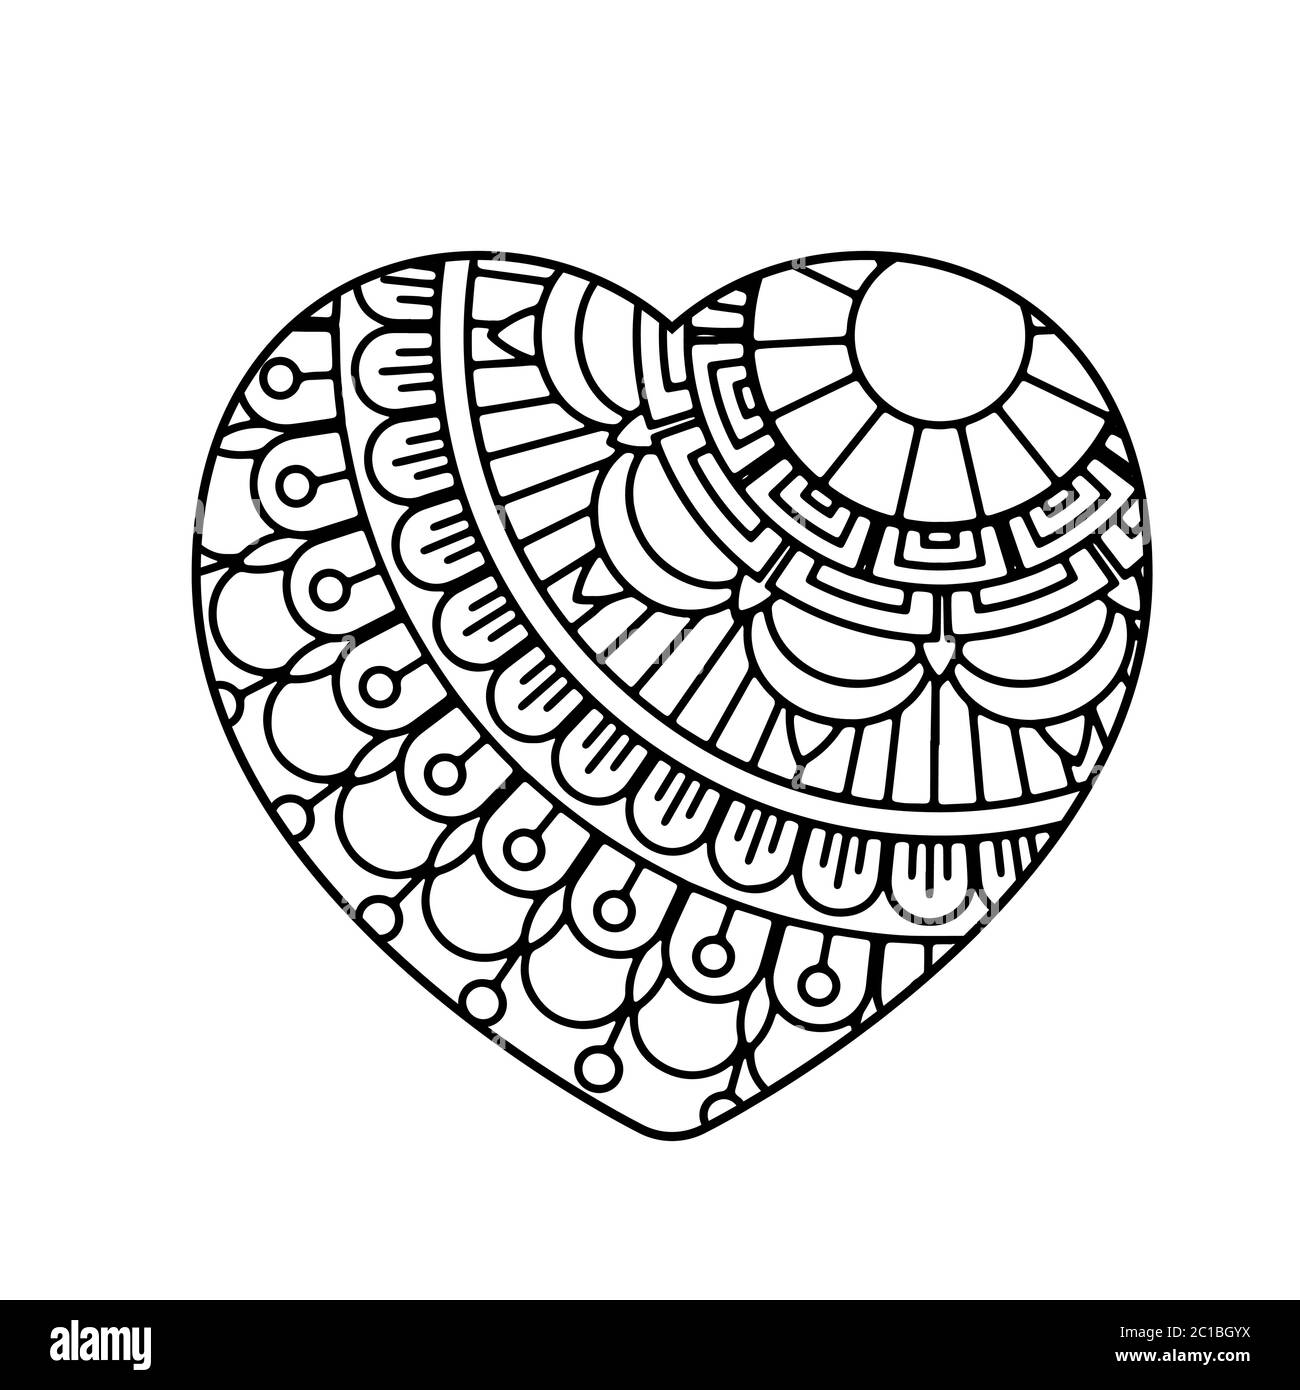 Mandala Herz. Valentinstag Erwachsene Malvorlagen. Vektorgrafik. Isoliert auf weißem Hintergrund Stock Vektor